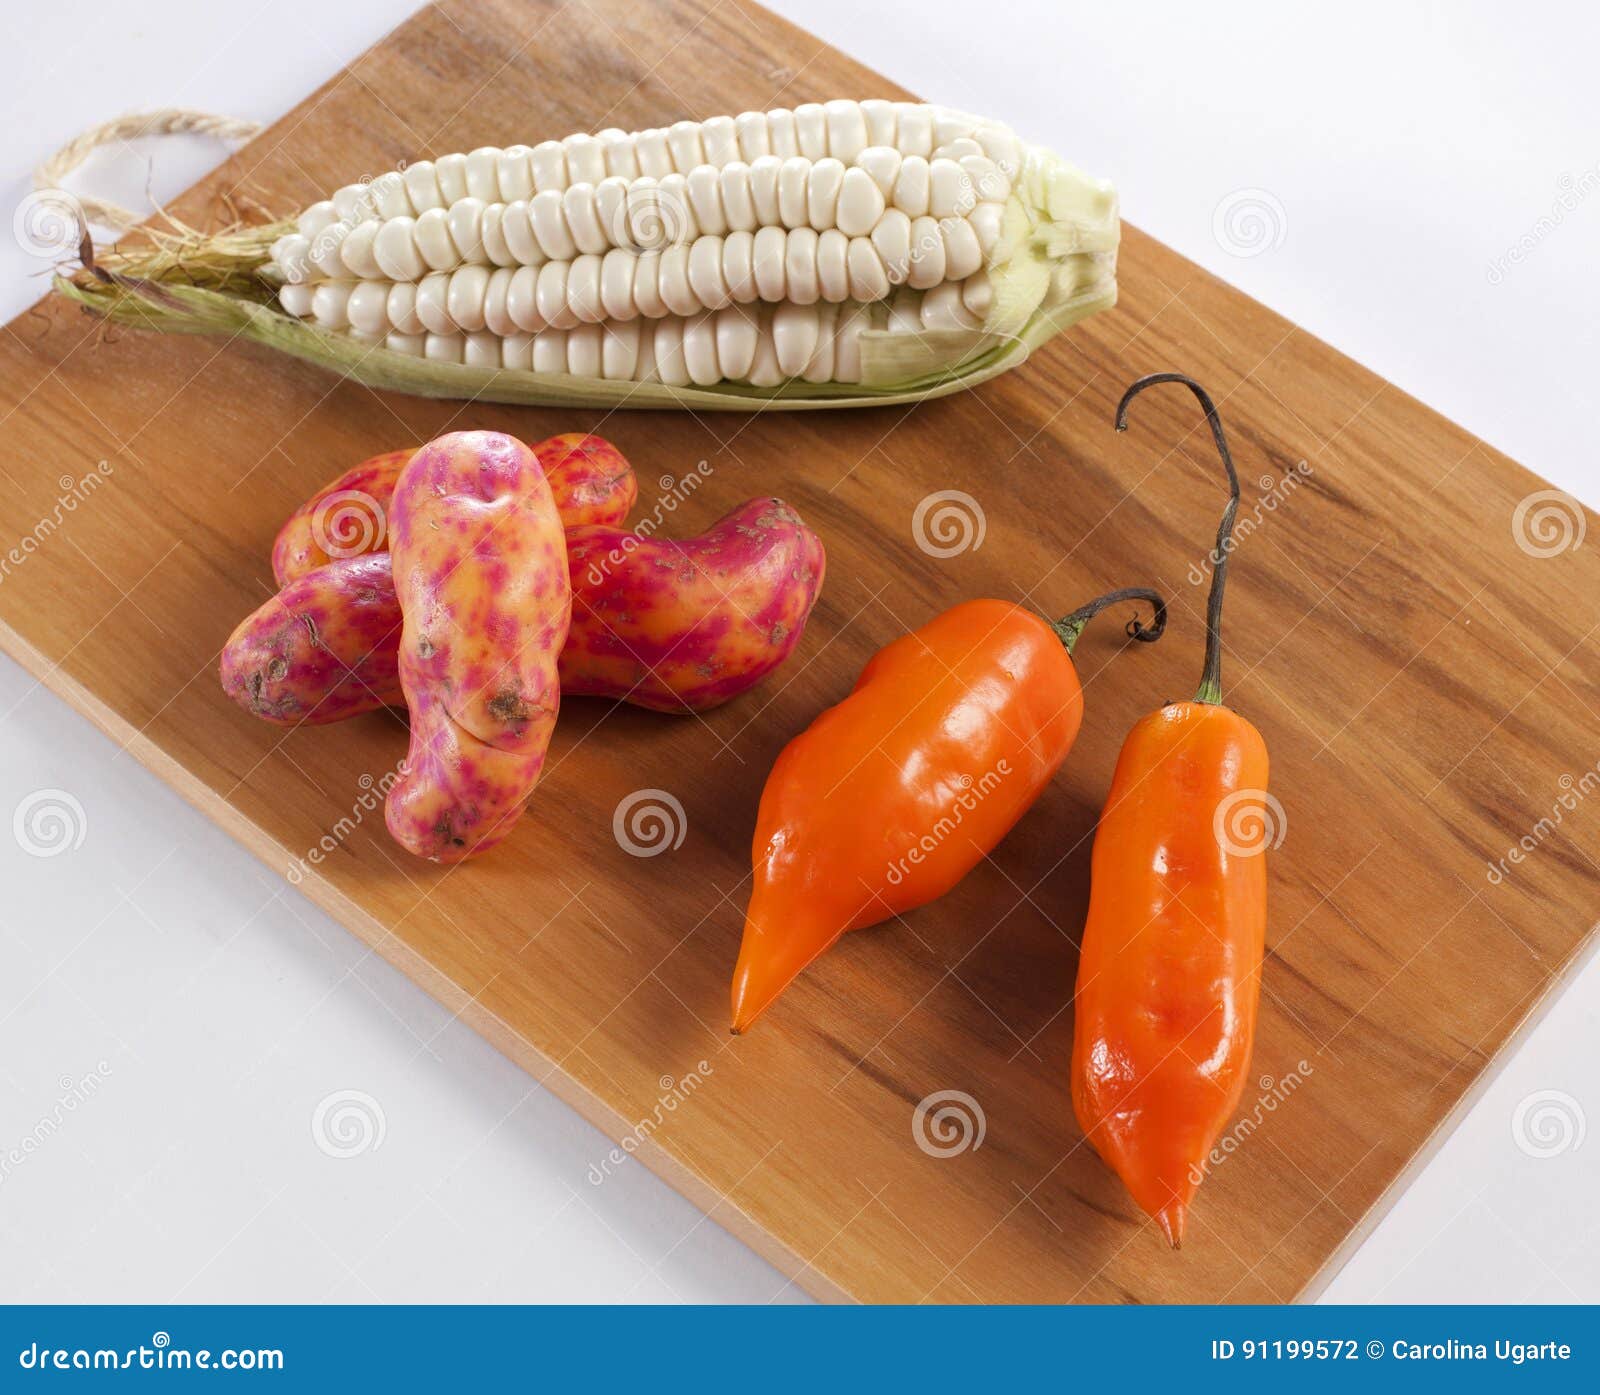 corn,chili and olluco.